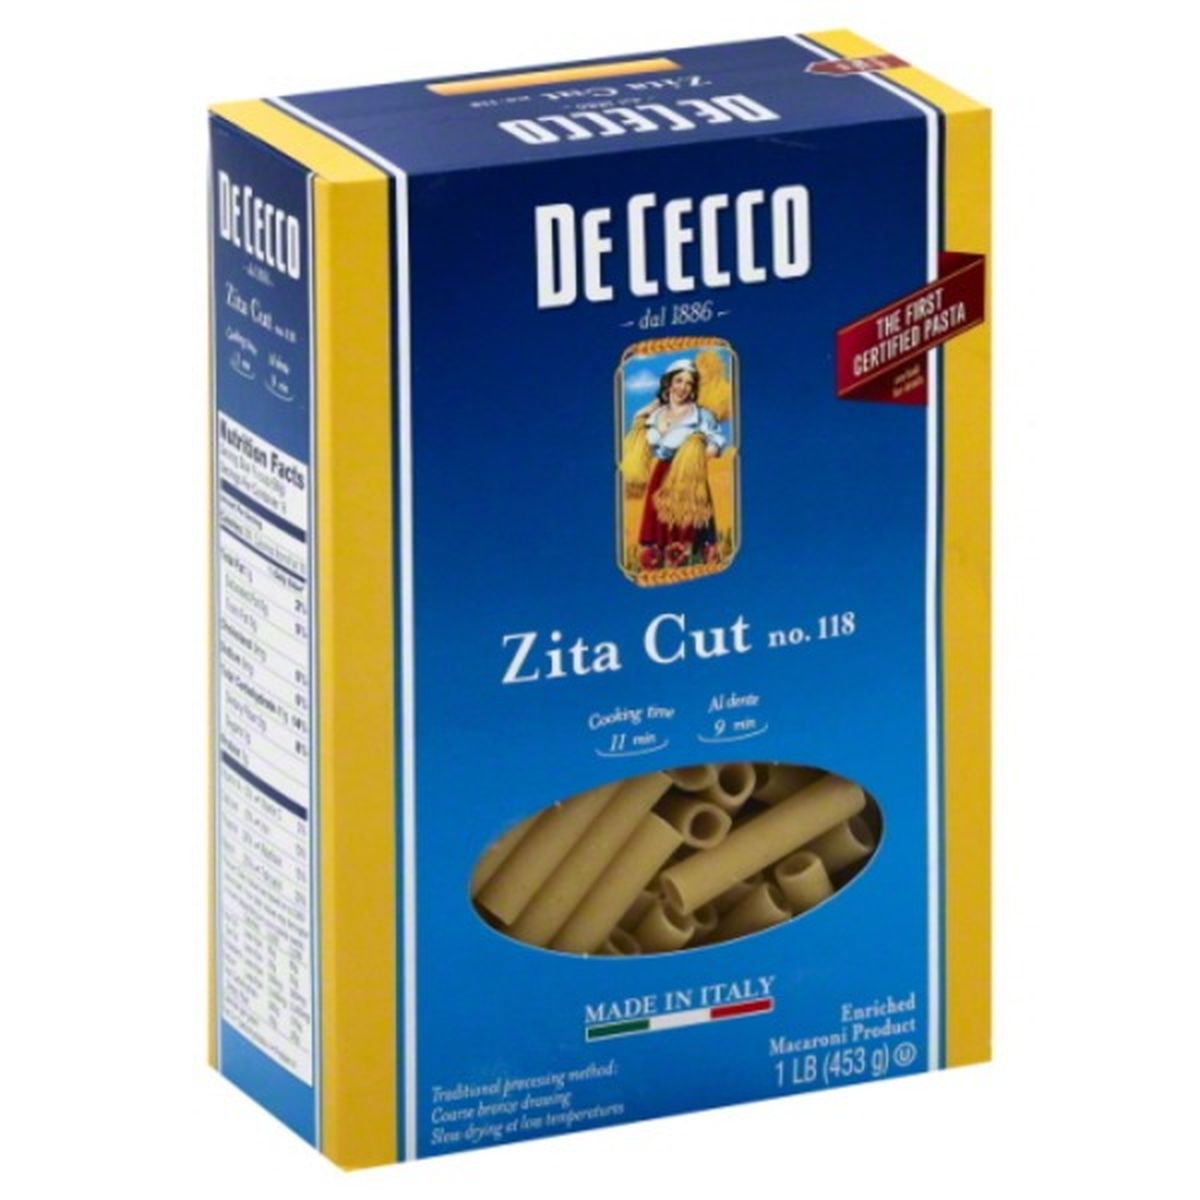 Calories in De Cecco Zita Cut, No. 118